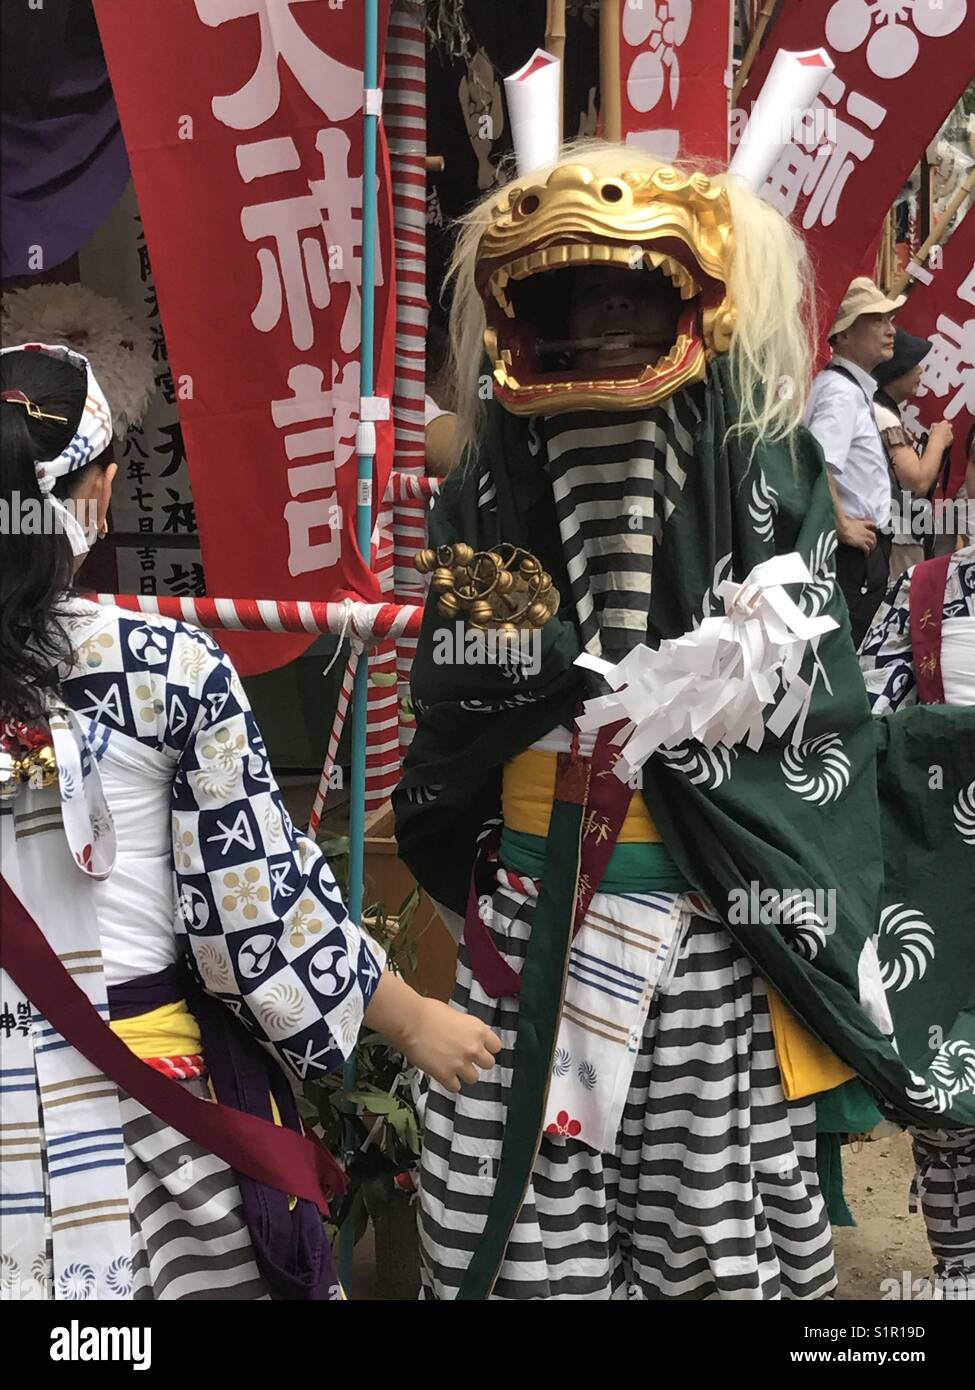 Shi-shi, lion, au sanctuaire Shinto Tenmangu Tenjin Matsuri festival durant, Osaka, Japon. Banque D'Images